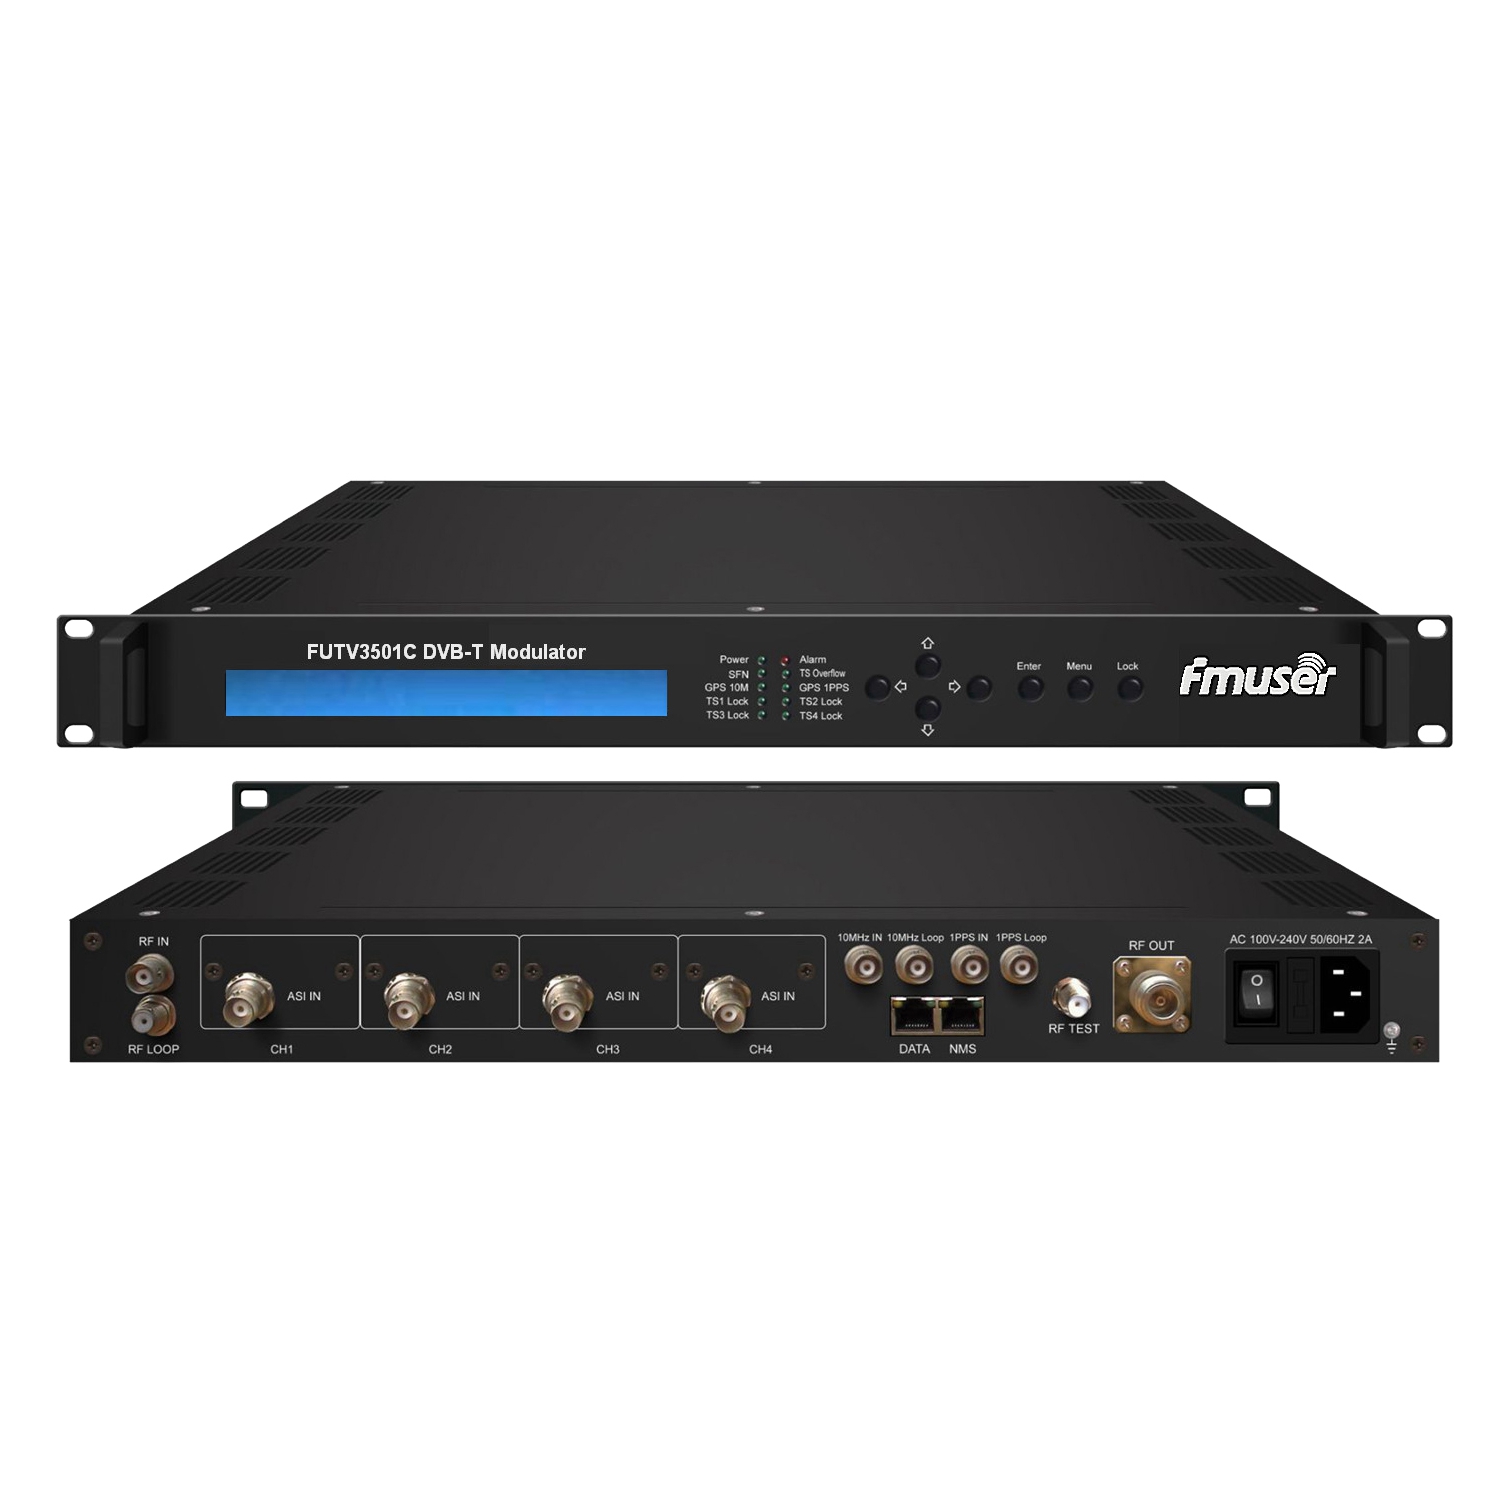 FMUSER FUTV3501C DVB-T Modulator (4 * ASI în, 1 * RF DPD out, DVB-T standard) cu control de la distanță